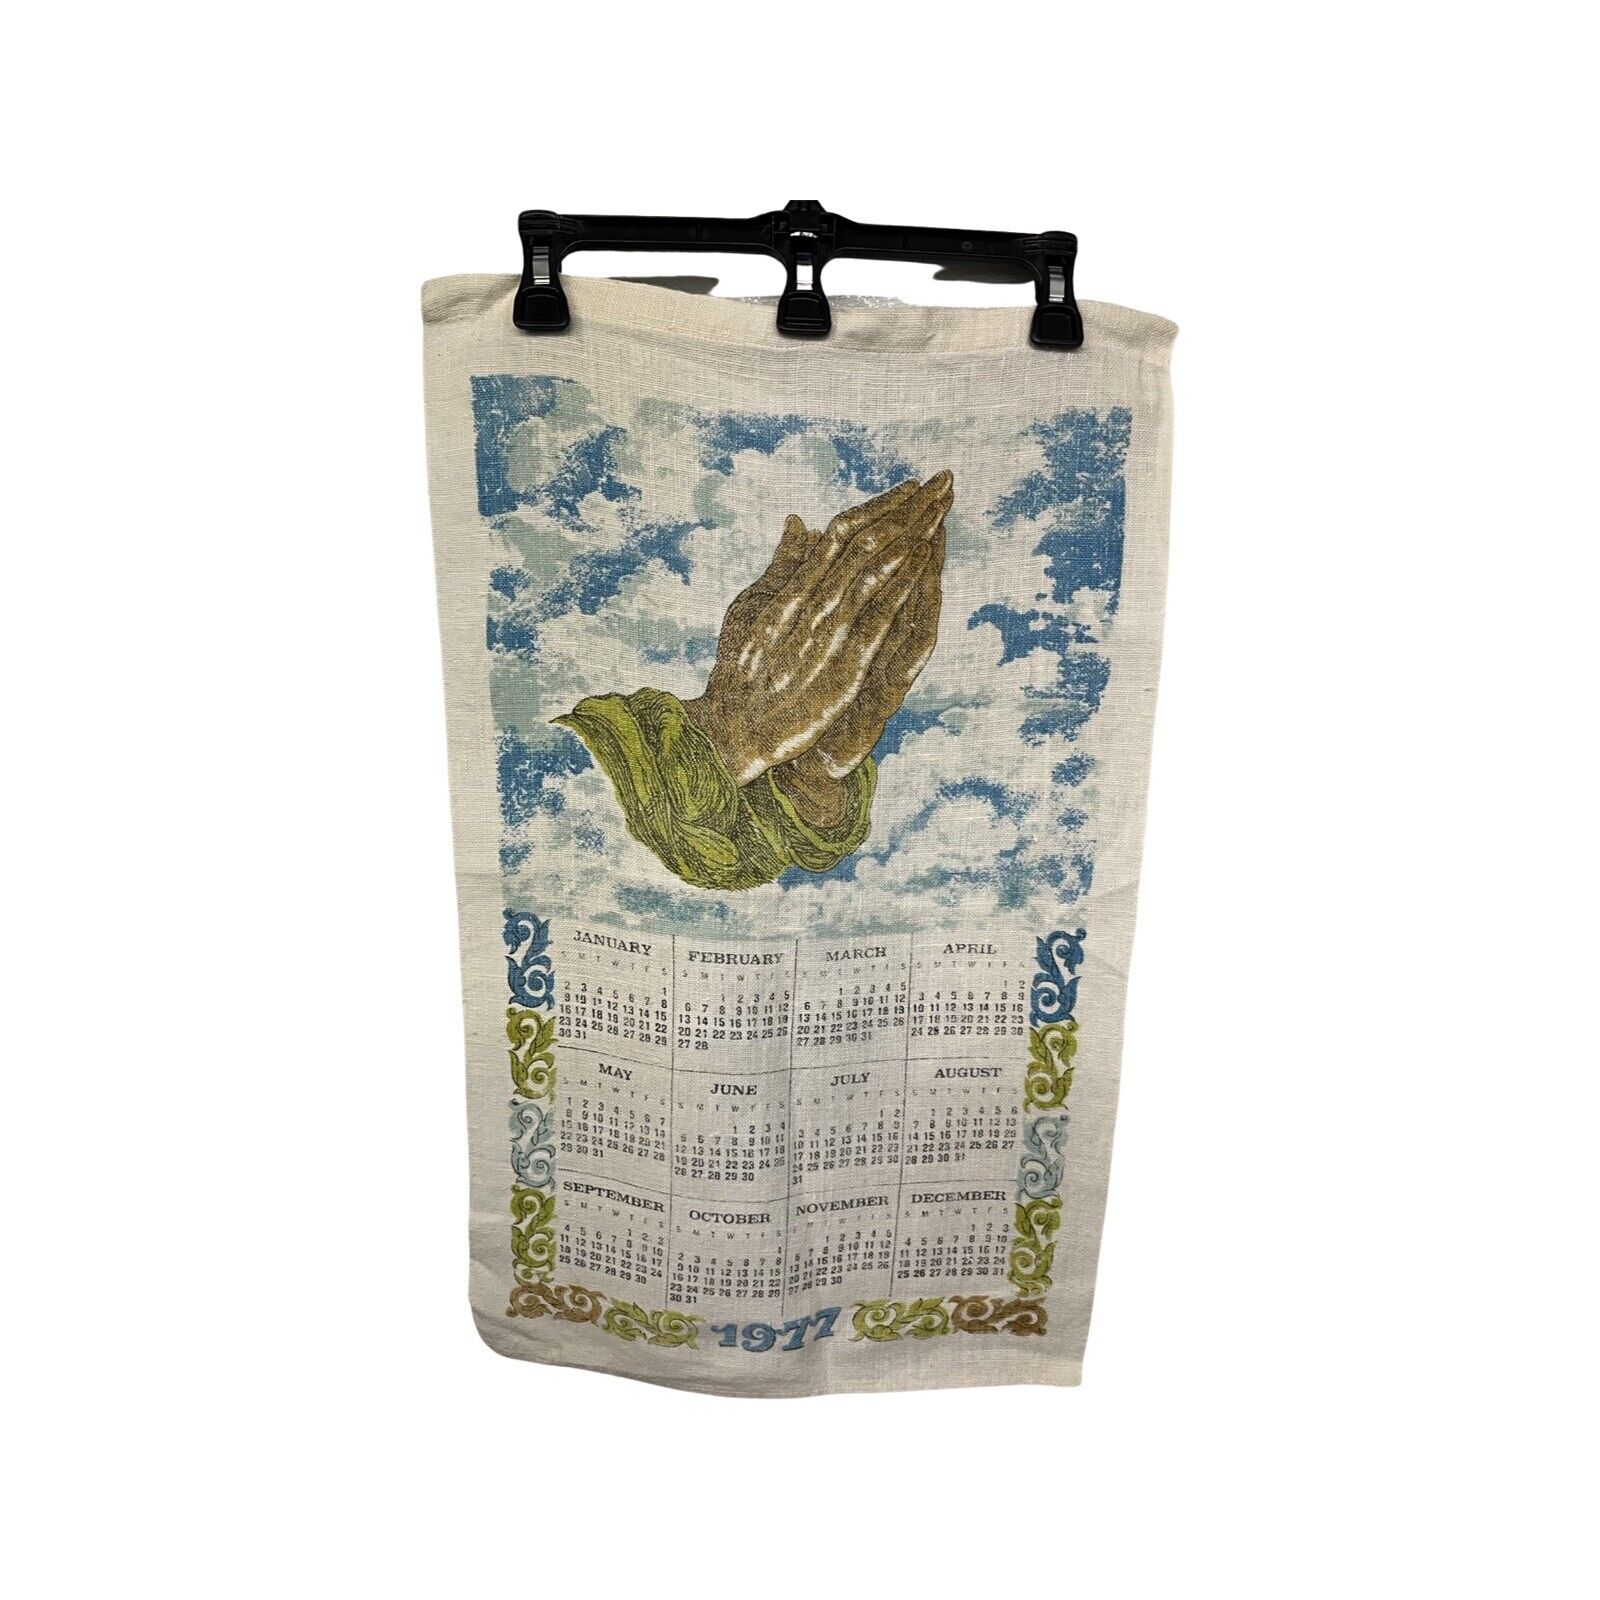 1977 Praying Hands Calendar Linen Tea Kitchen Towel Vintage 17 x 26 in